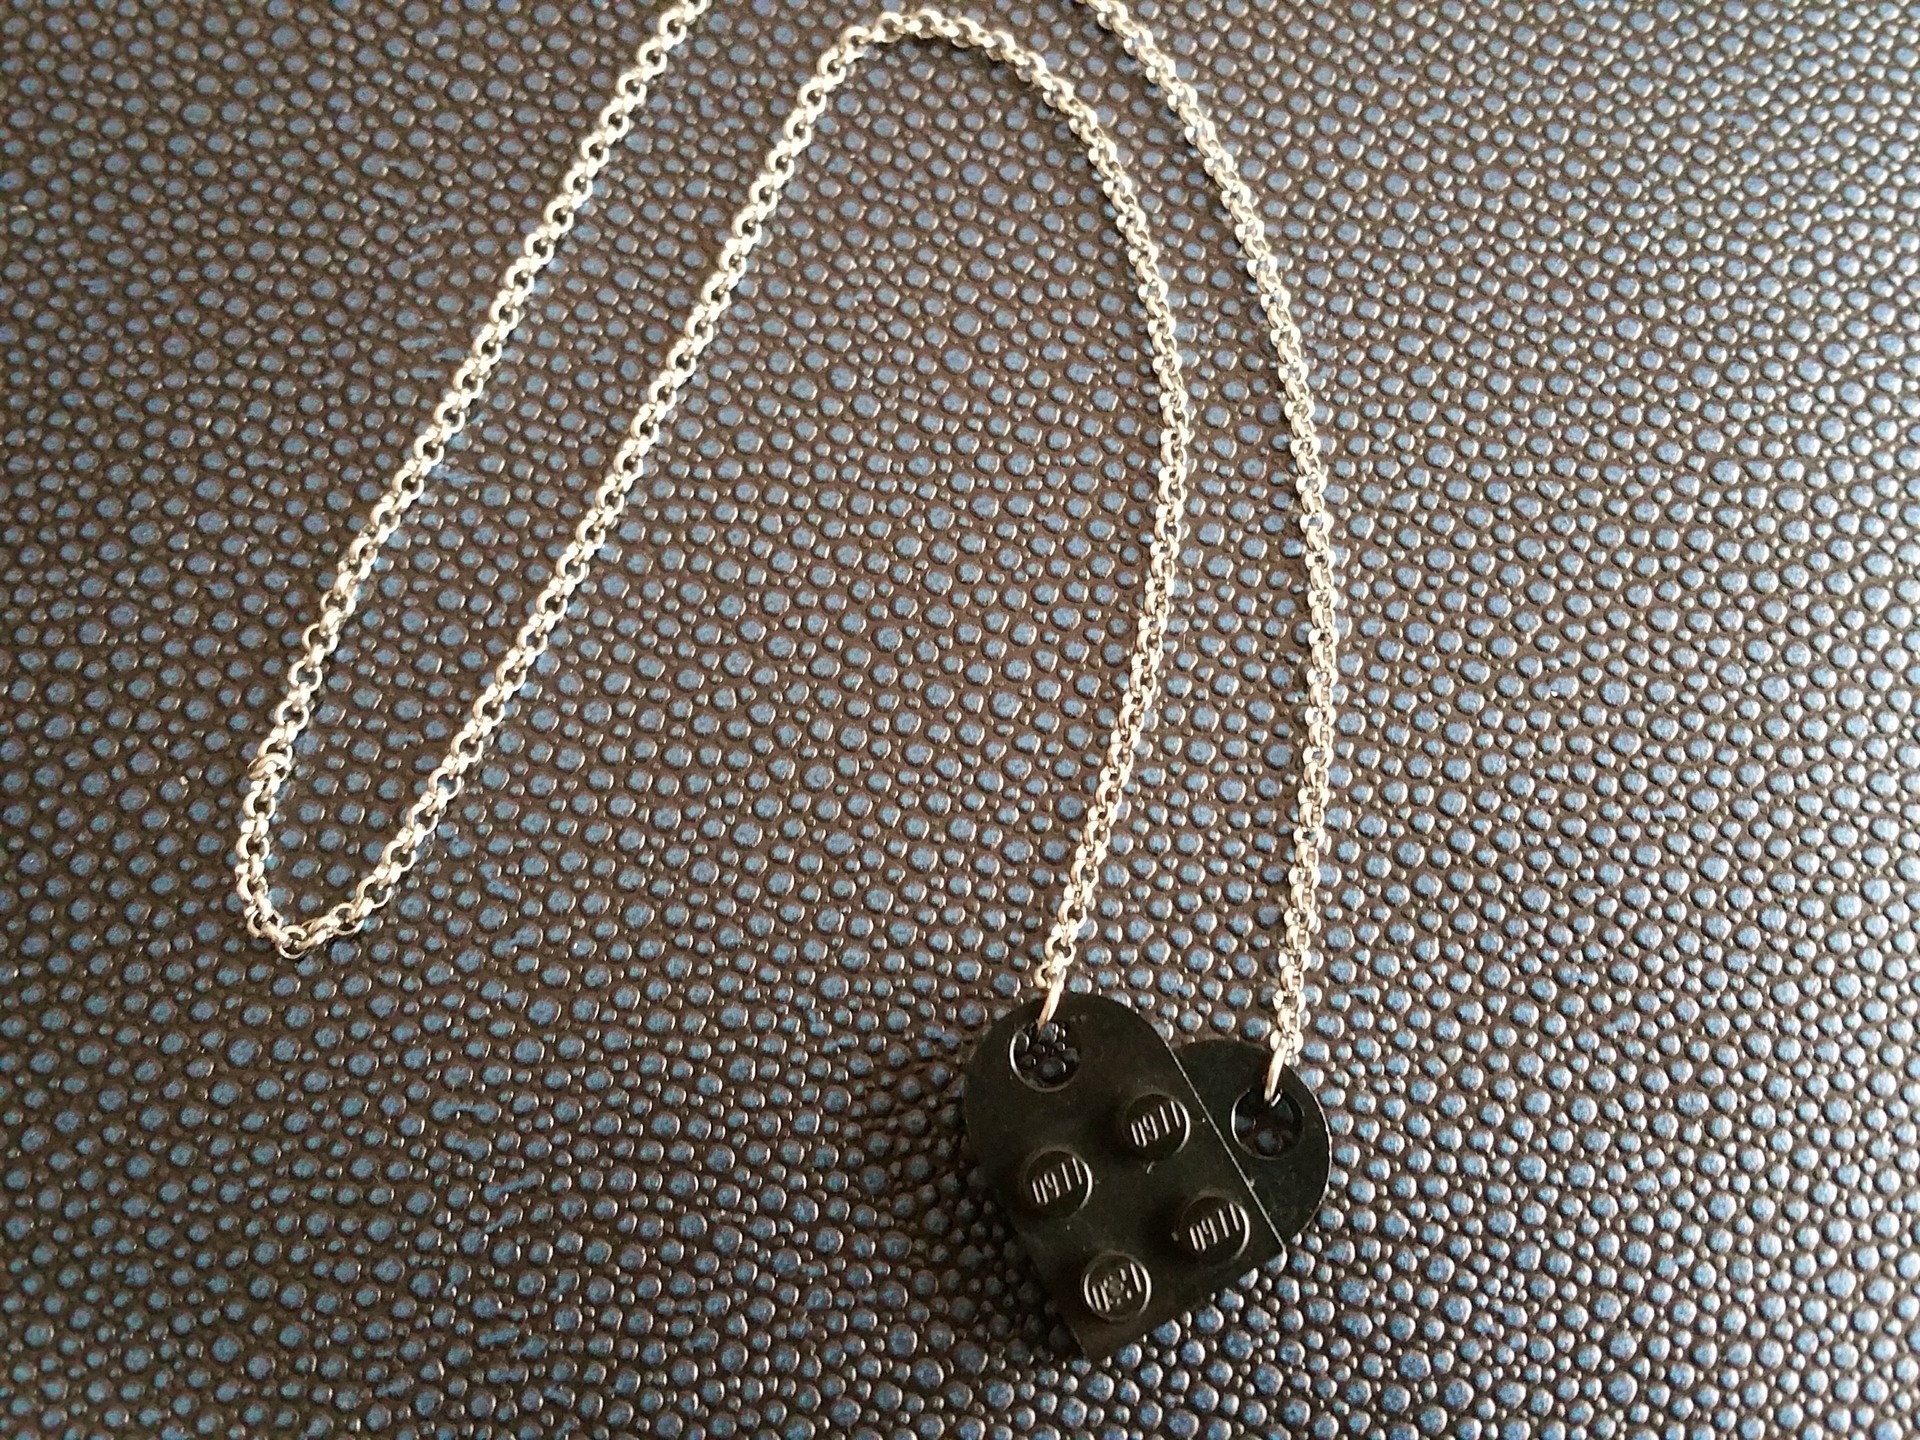 Collier coeur lego gris acier inoxydable : collier-et-pendentif par  bullededouceurs